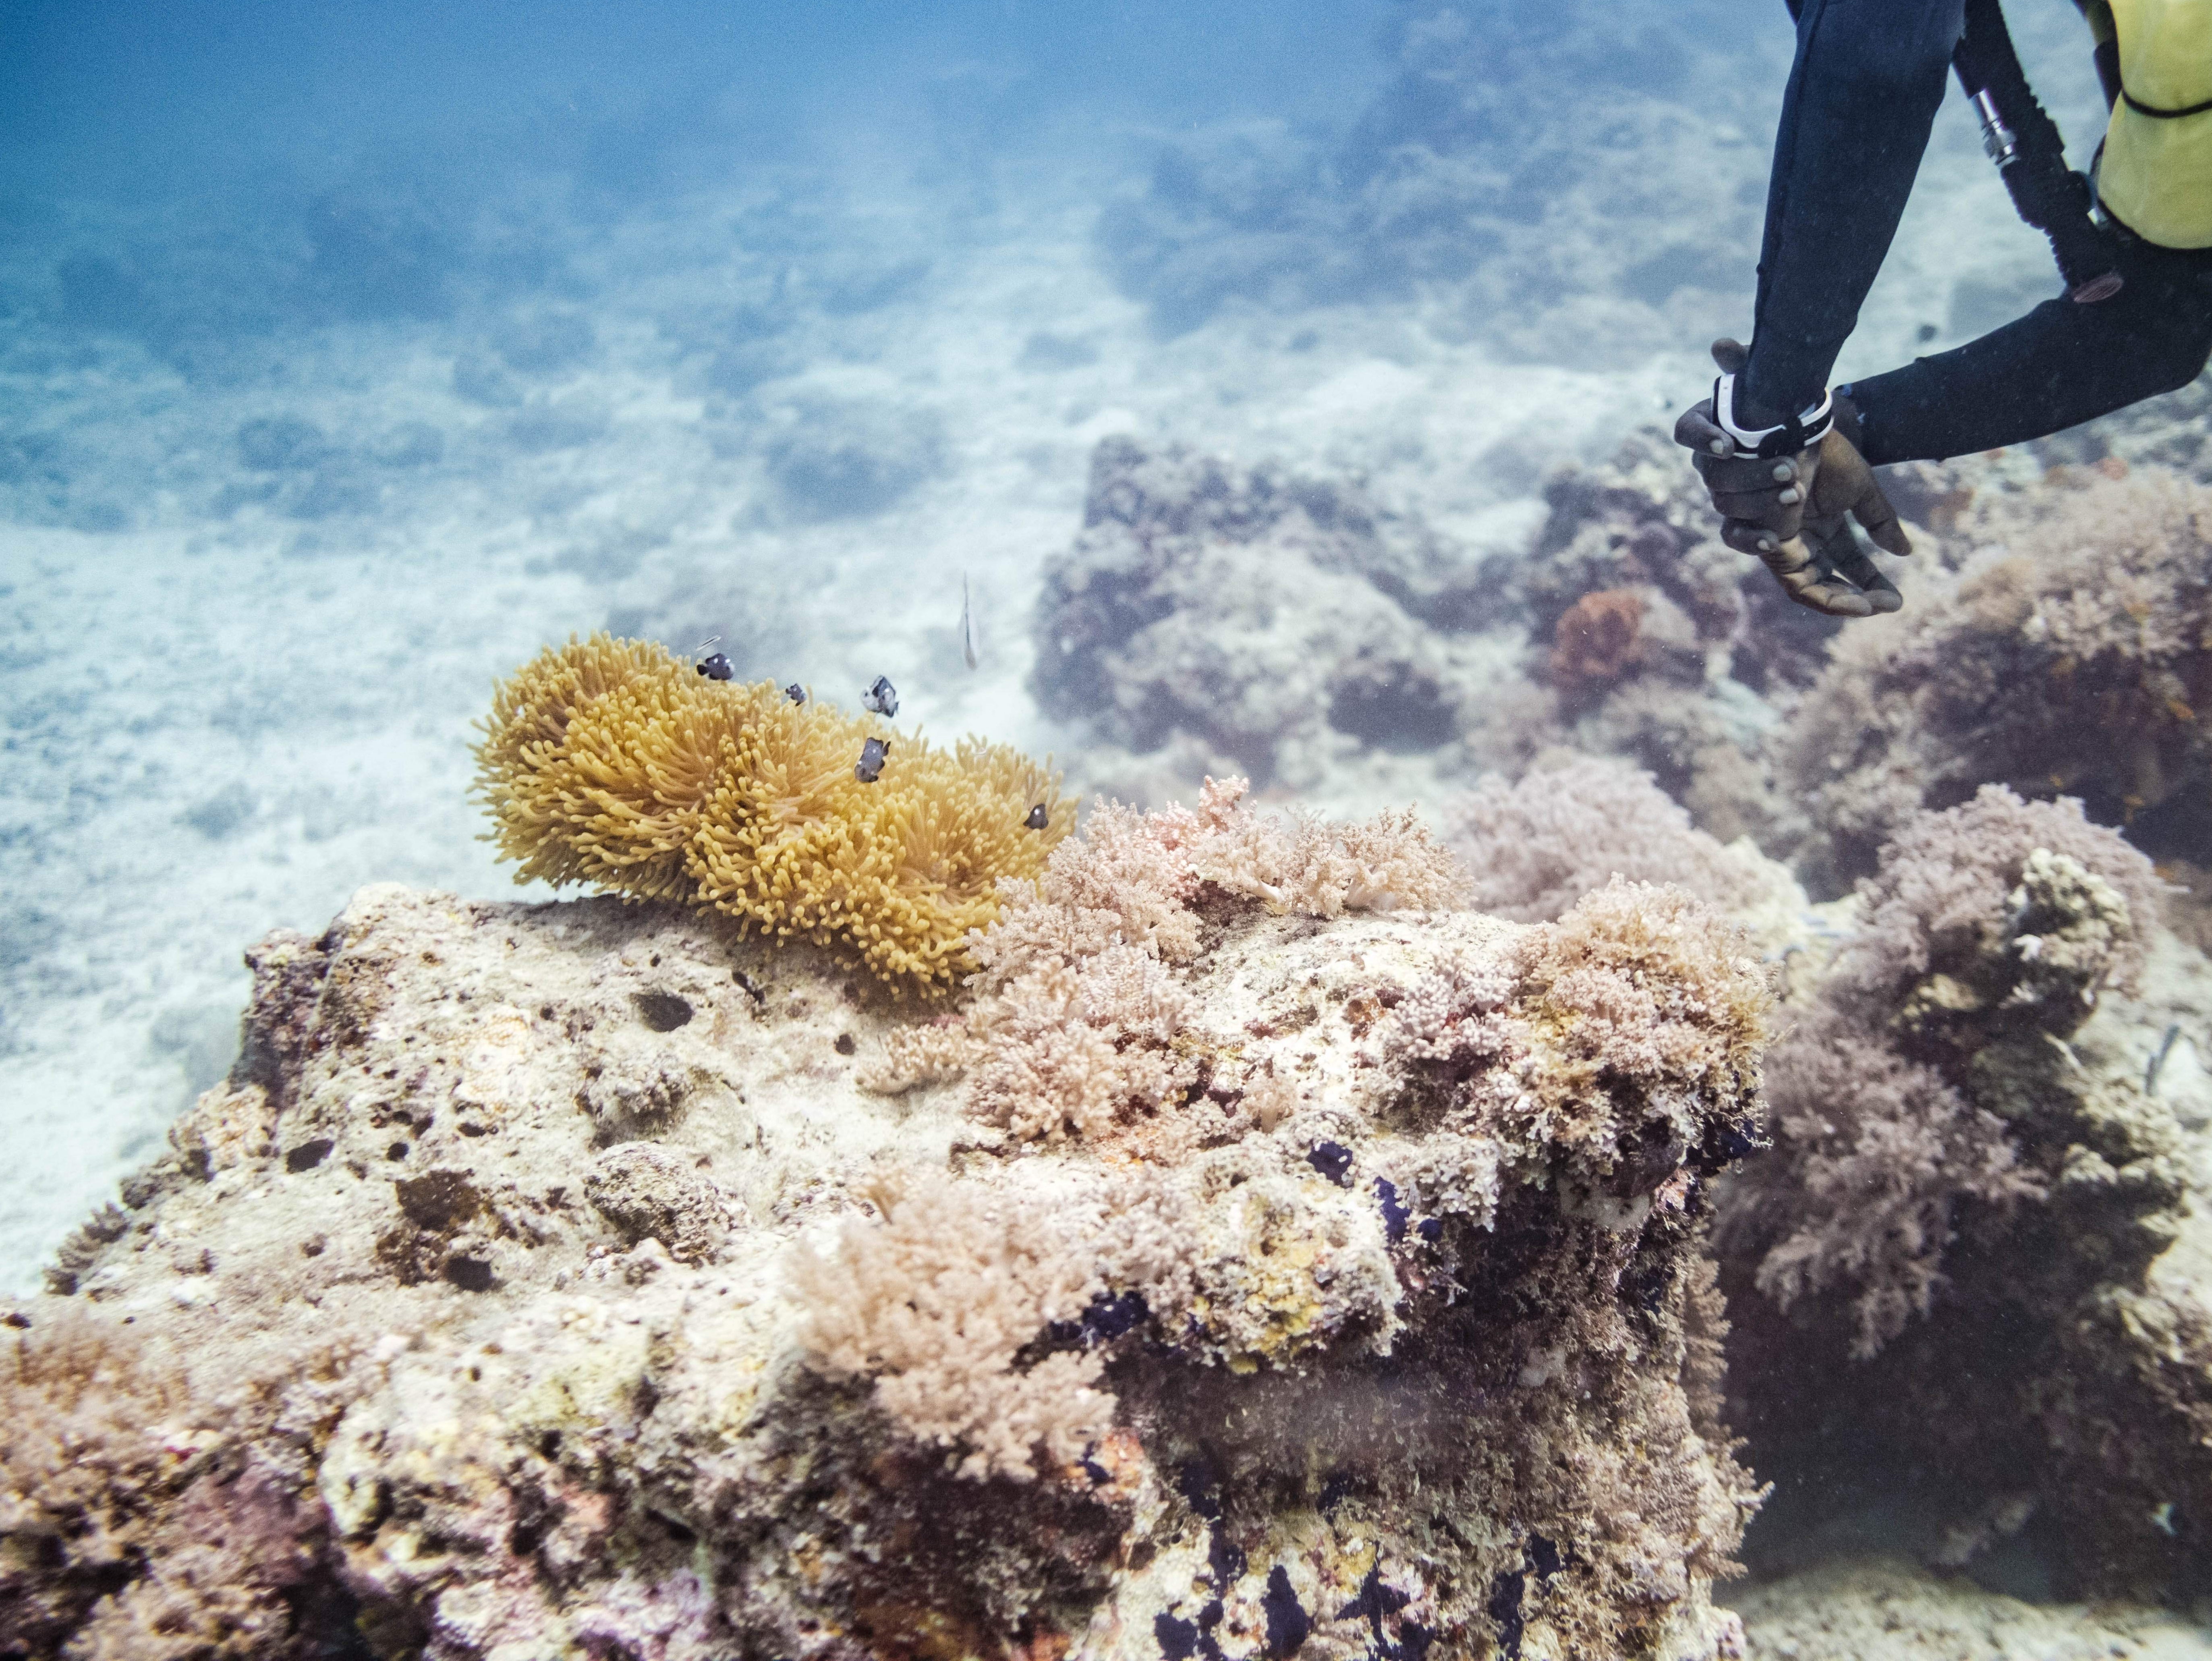 Coral reefs risk bleaching in warmer seas